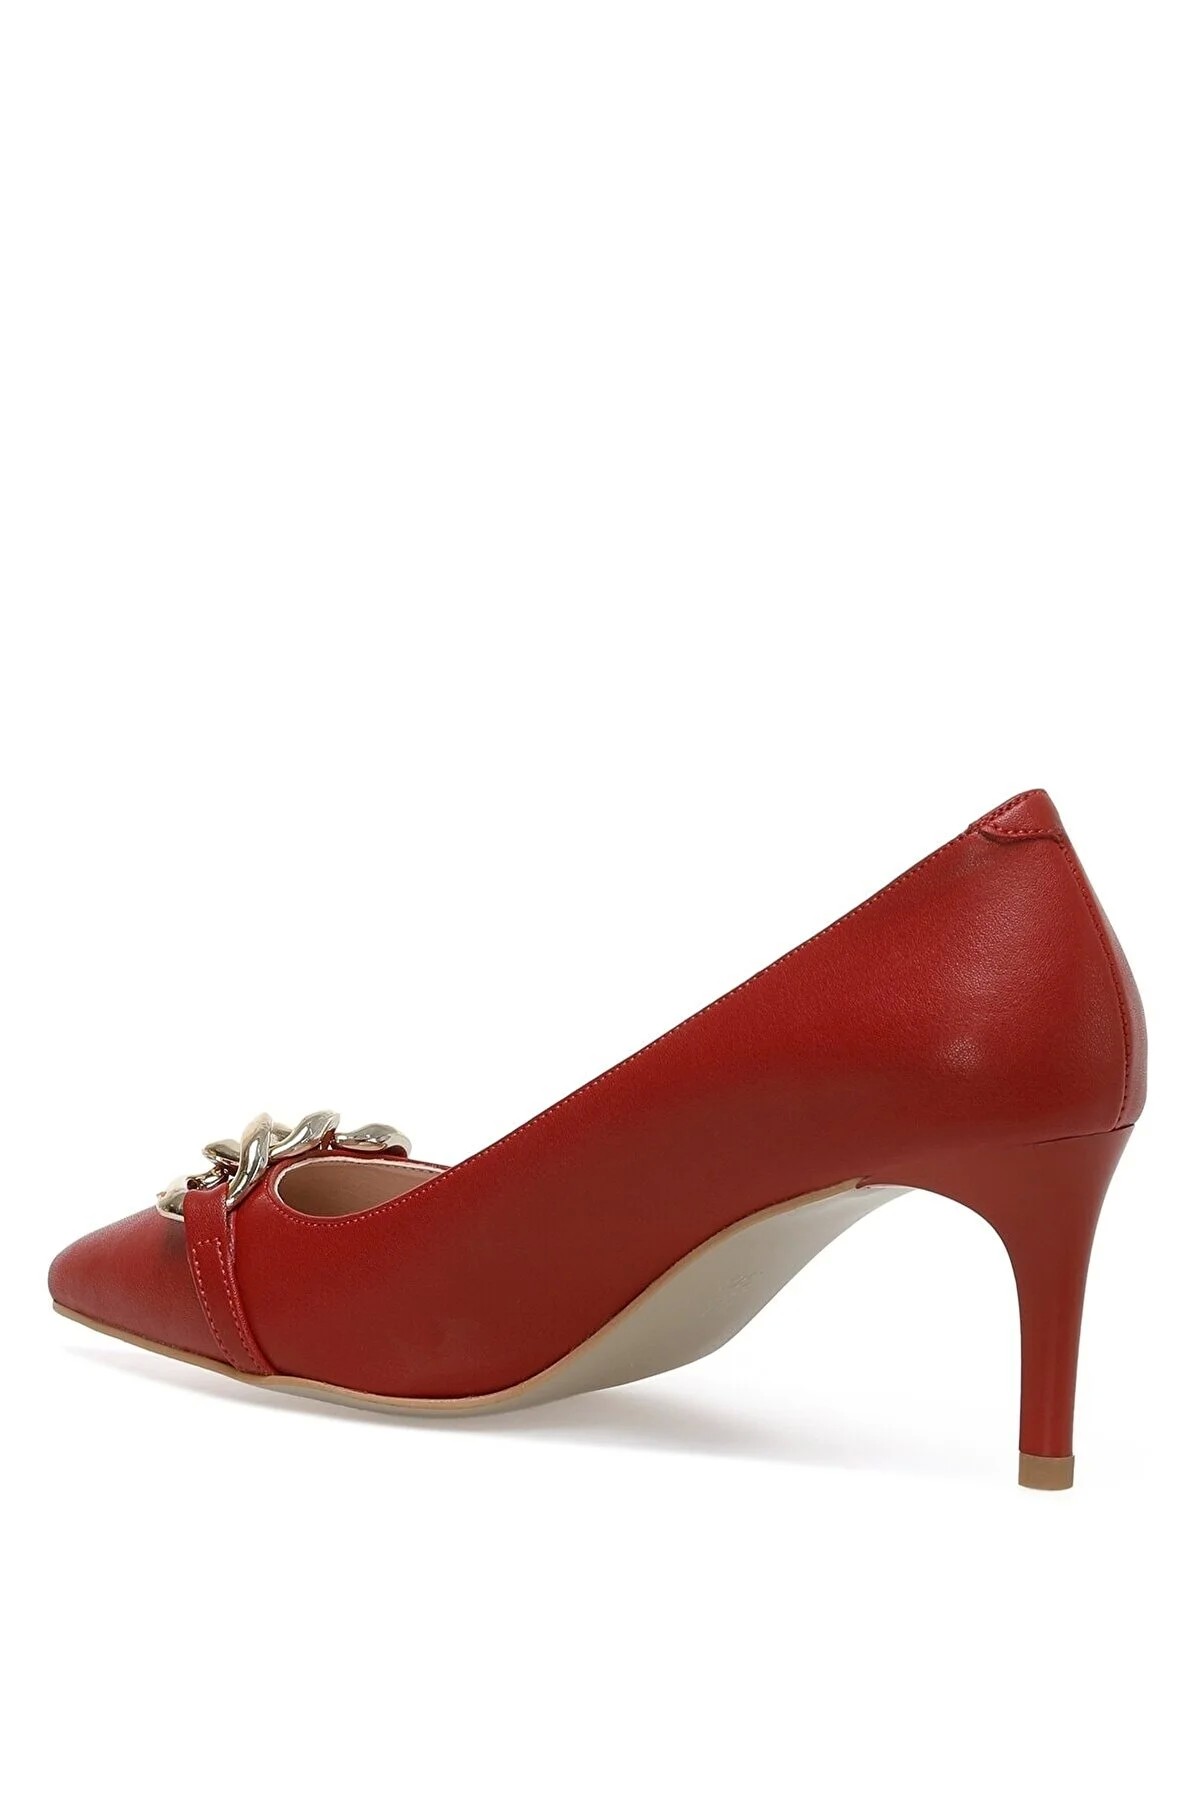 کفش پاشنه بلند زنانه قرمز